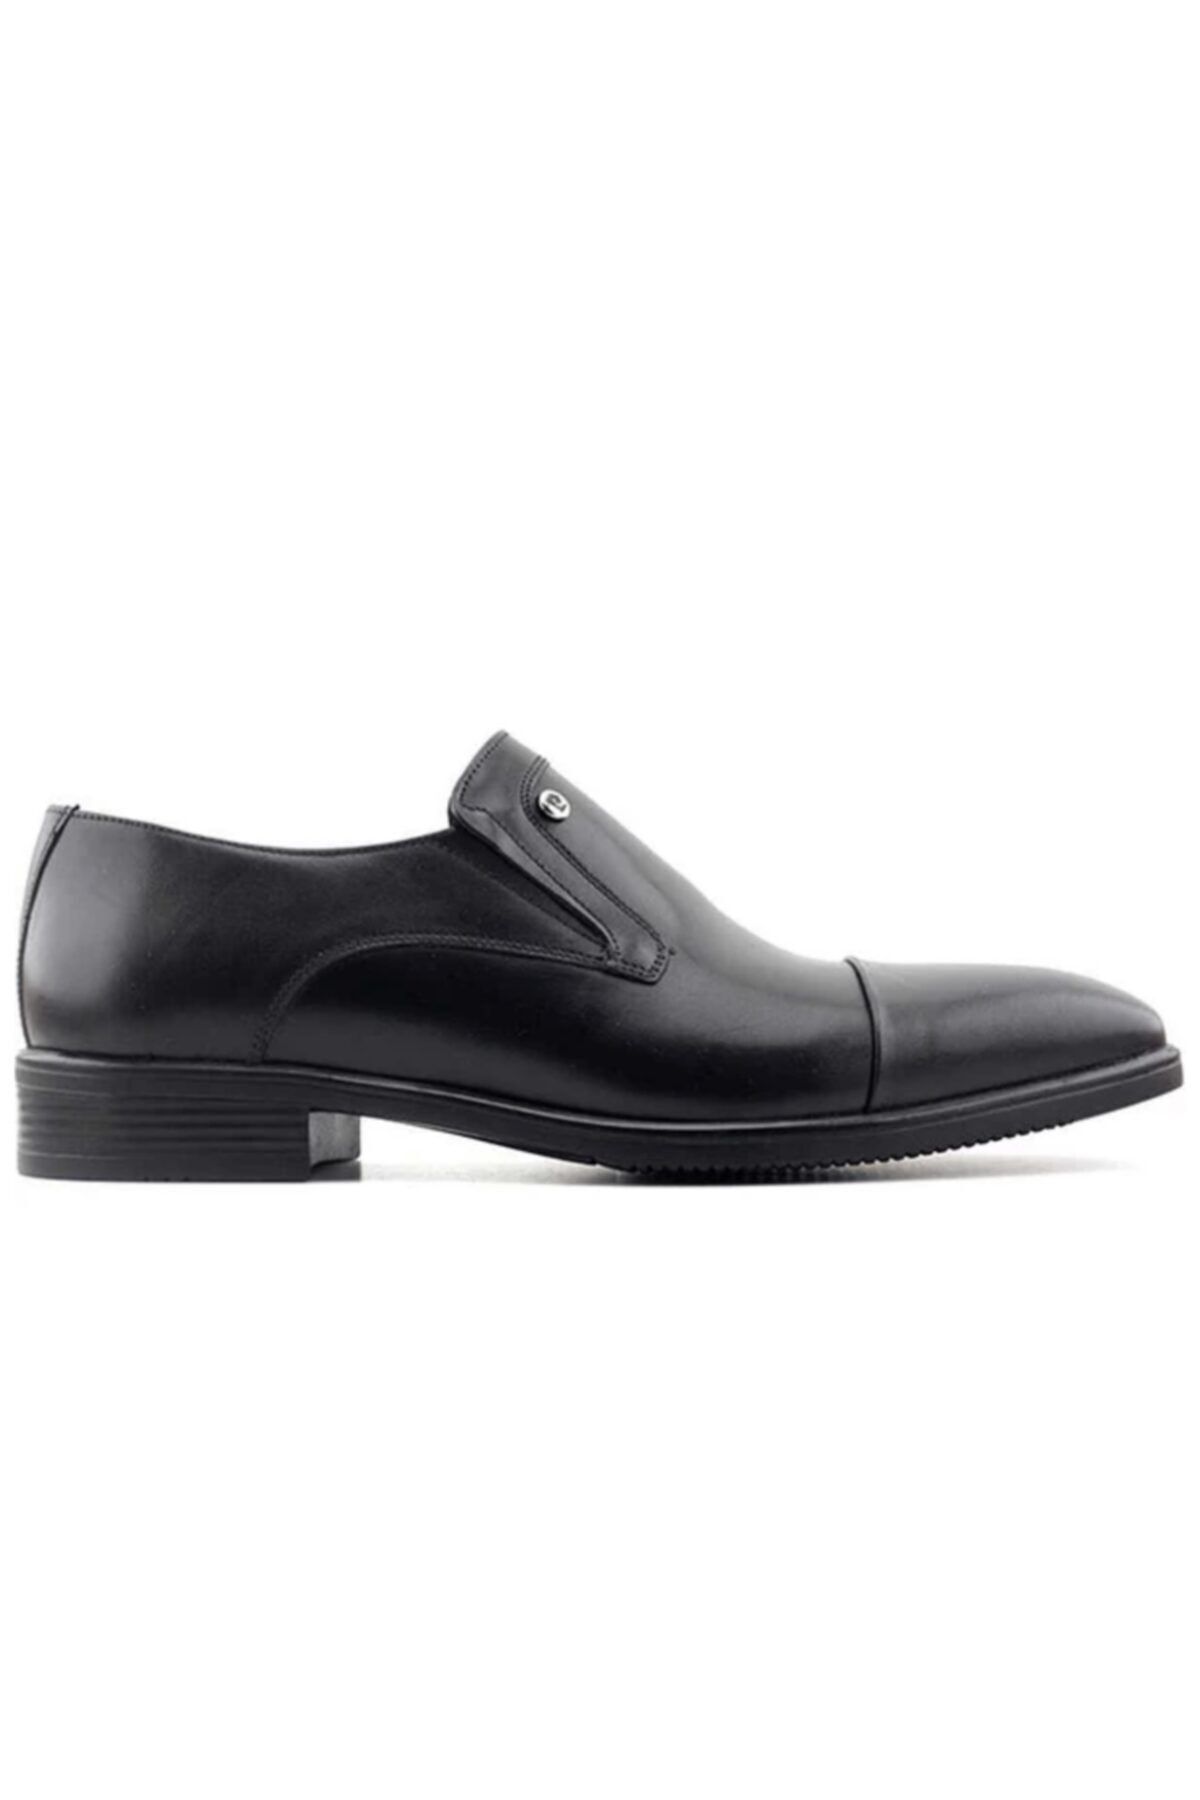 Pierre Cardin 120581 Erkek Klasik Ayakkabı-siyah